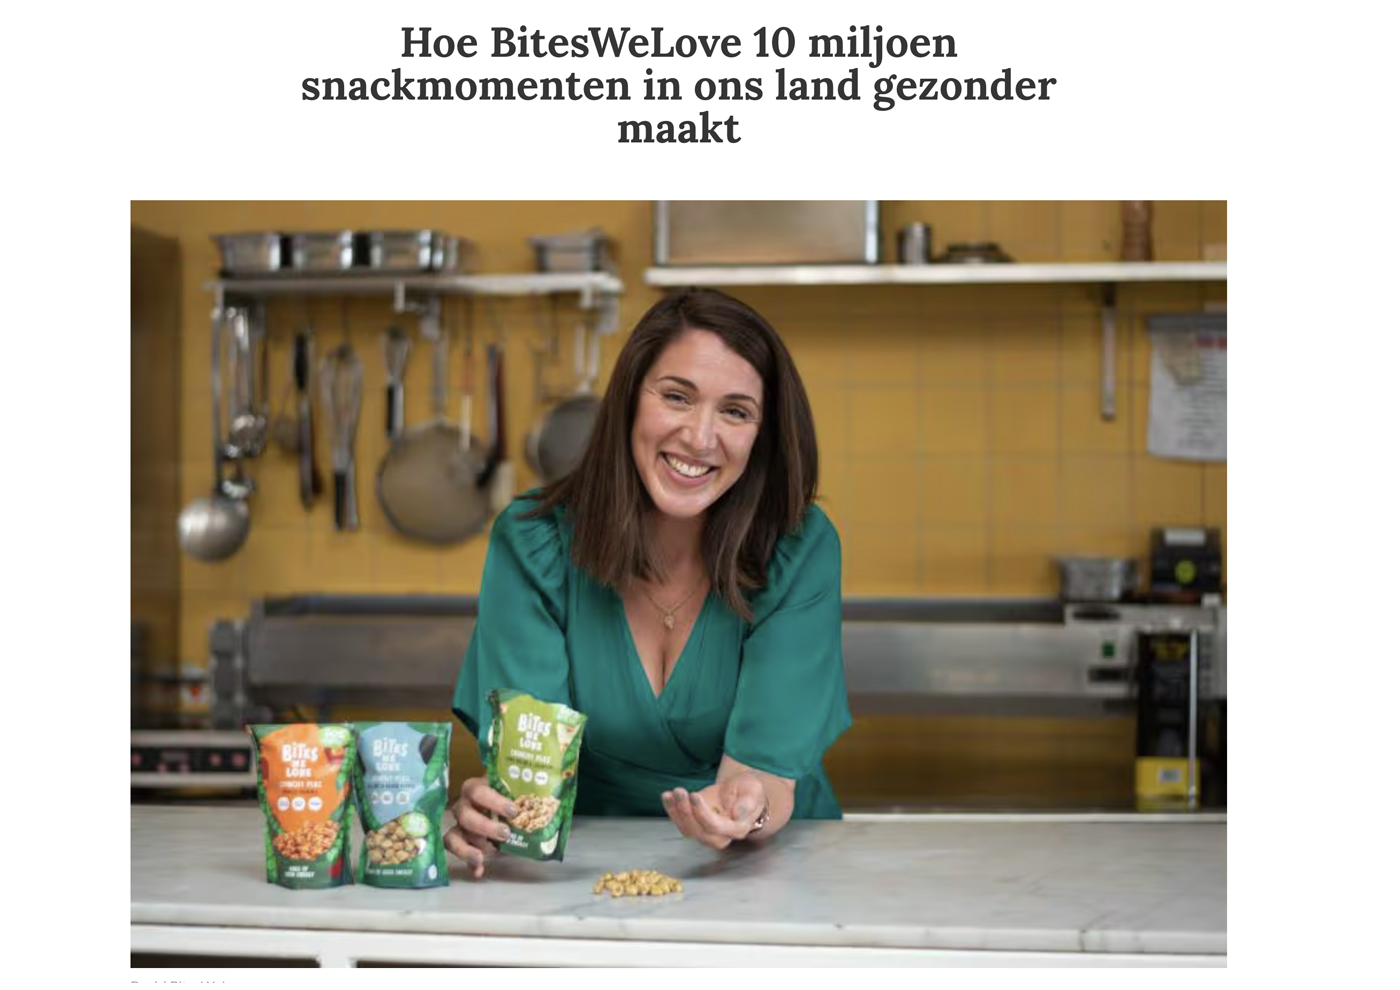 Hoe BitesWeLove 10 miljoen snackmomenten in ons land gezonder maakt